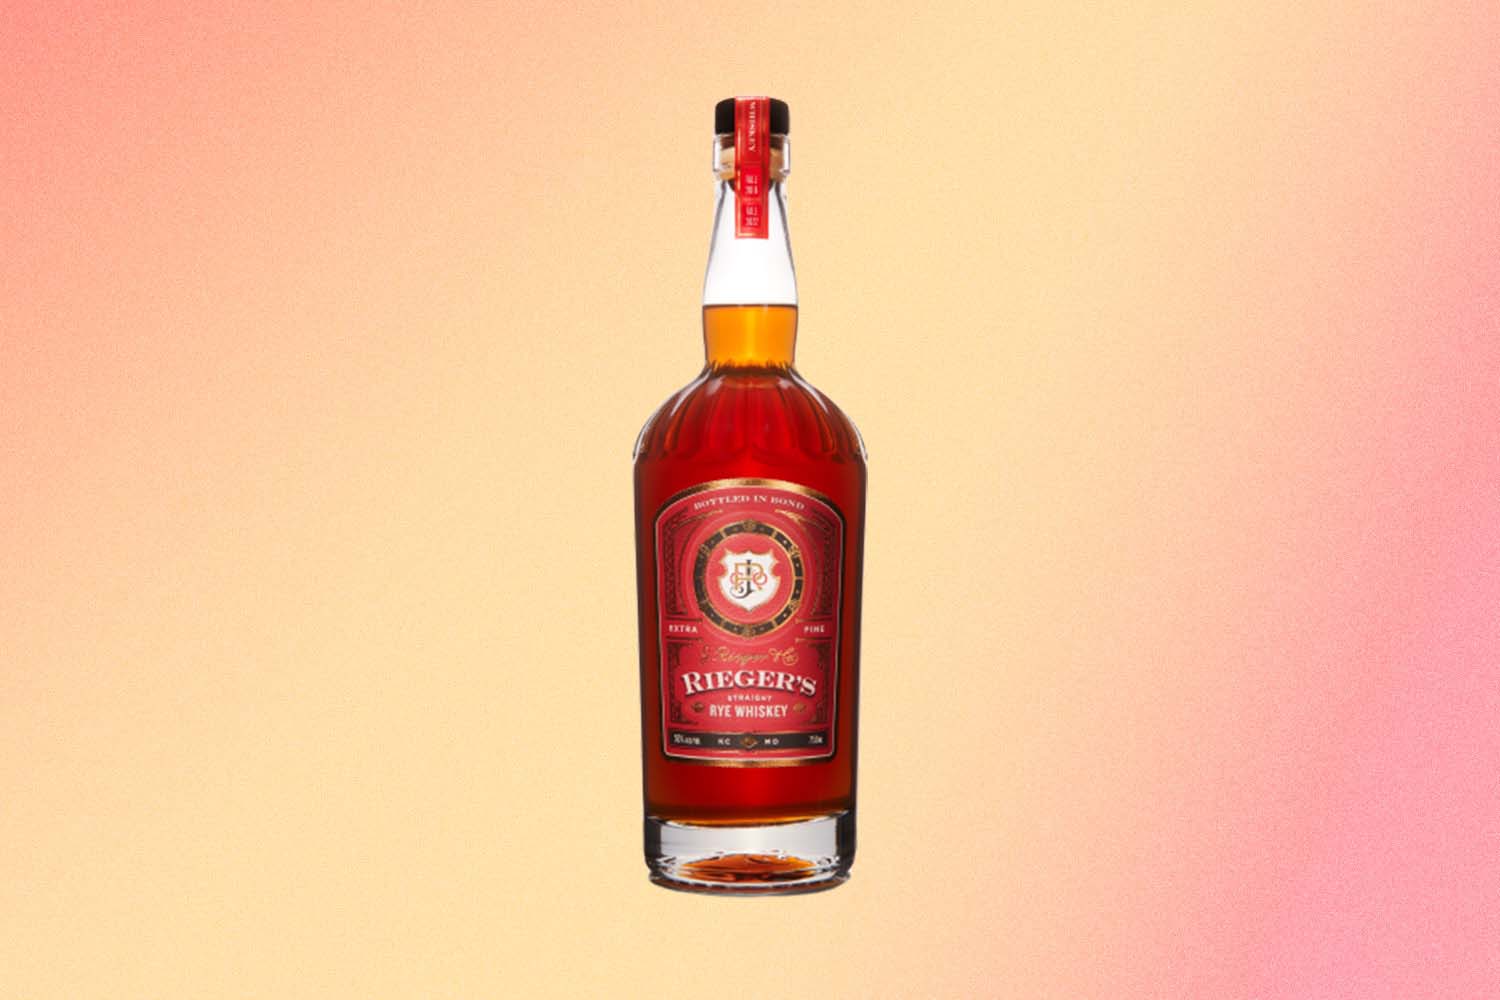 Rieger’s Straight Rye Whiskey Bottled in Bond